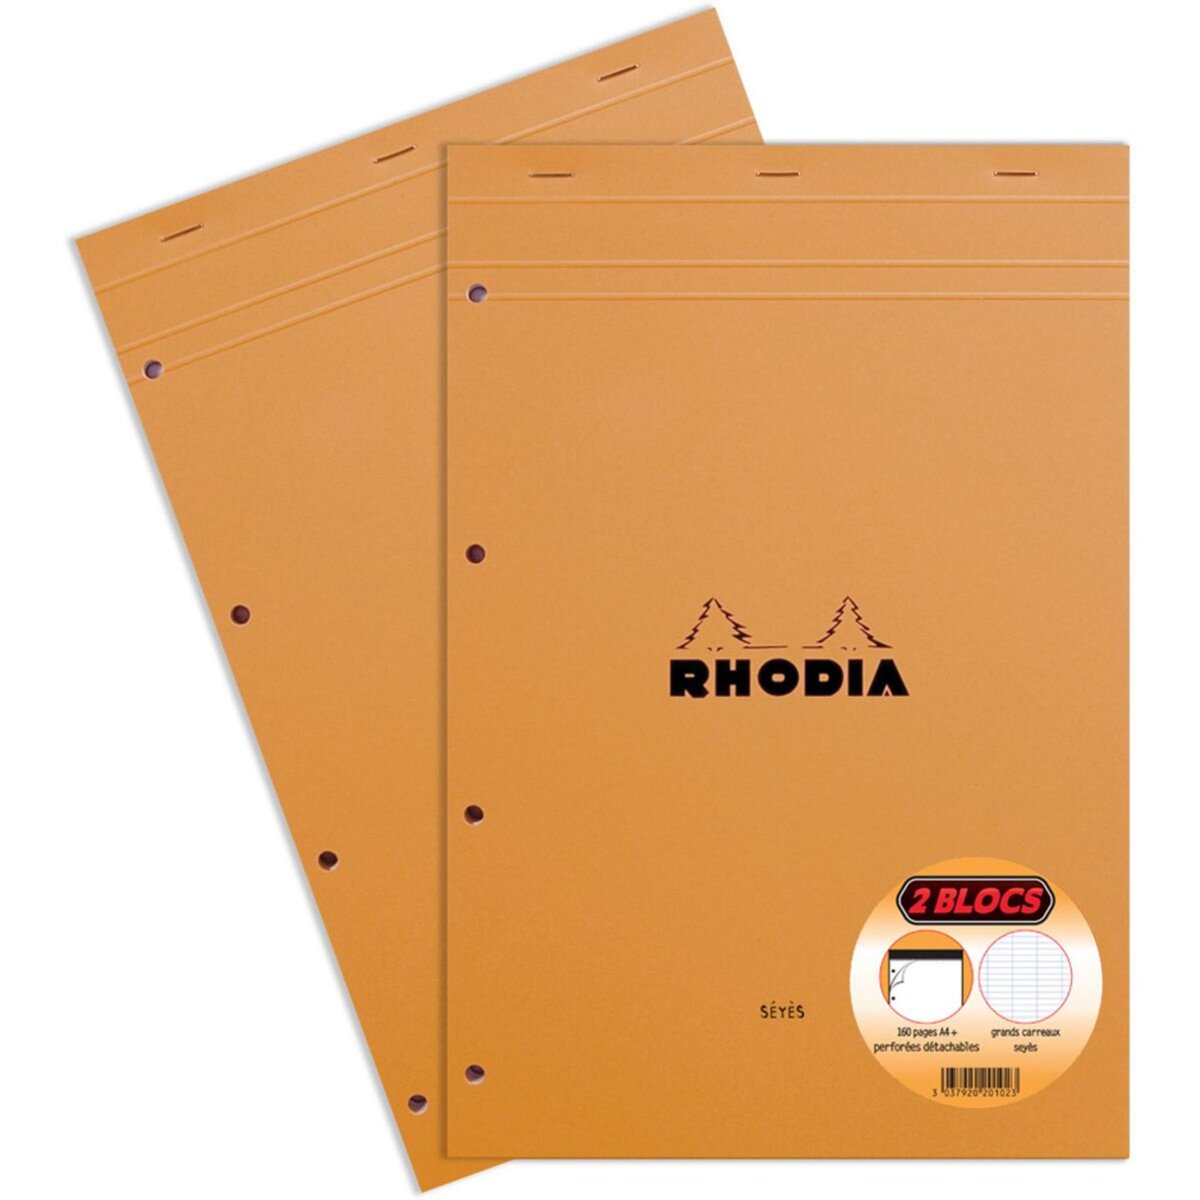 RHODIA Lot de 2 blocs notes 21x31.8cm 160 pages grands carreaux Seyes  orange pas cher 